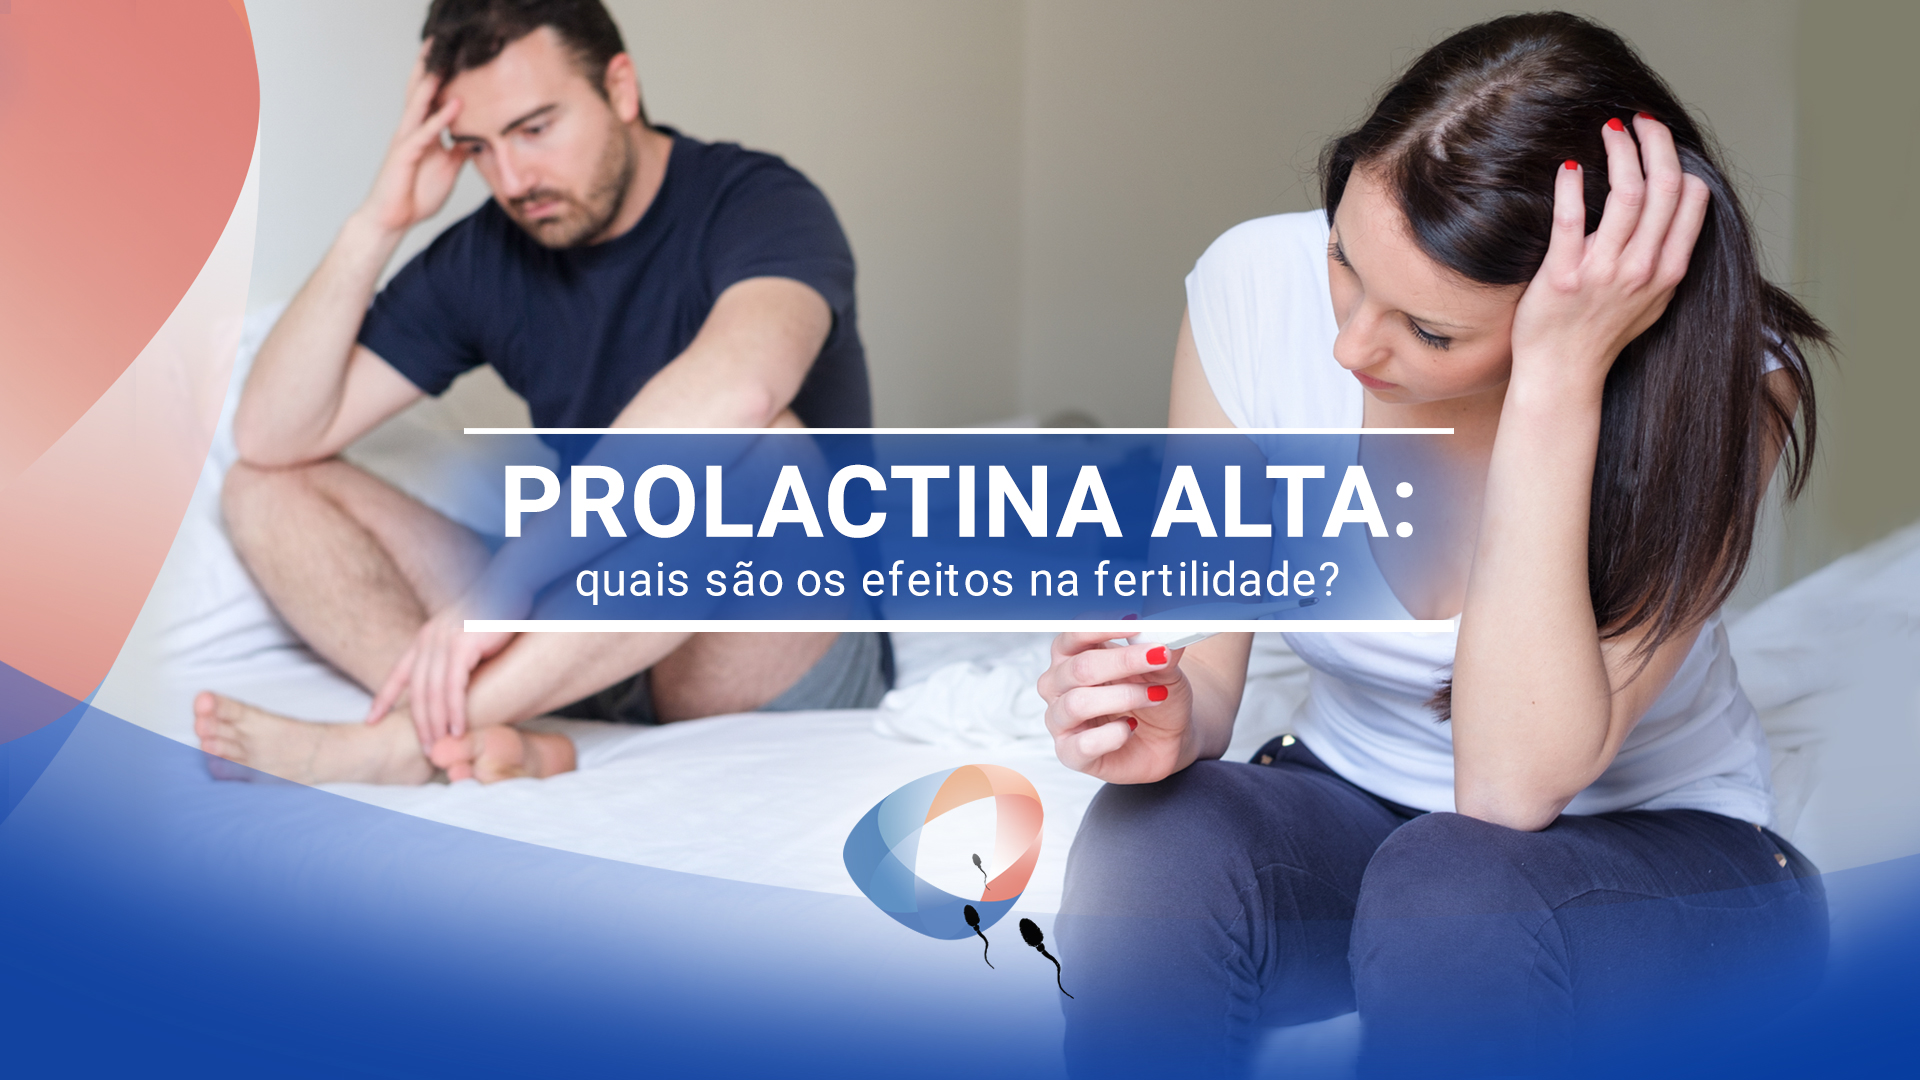 Prolactina alta: quais são os efeitos na fertilidade?